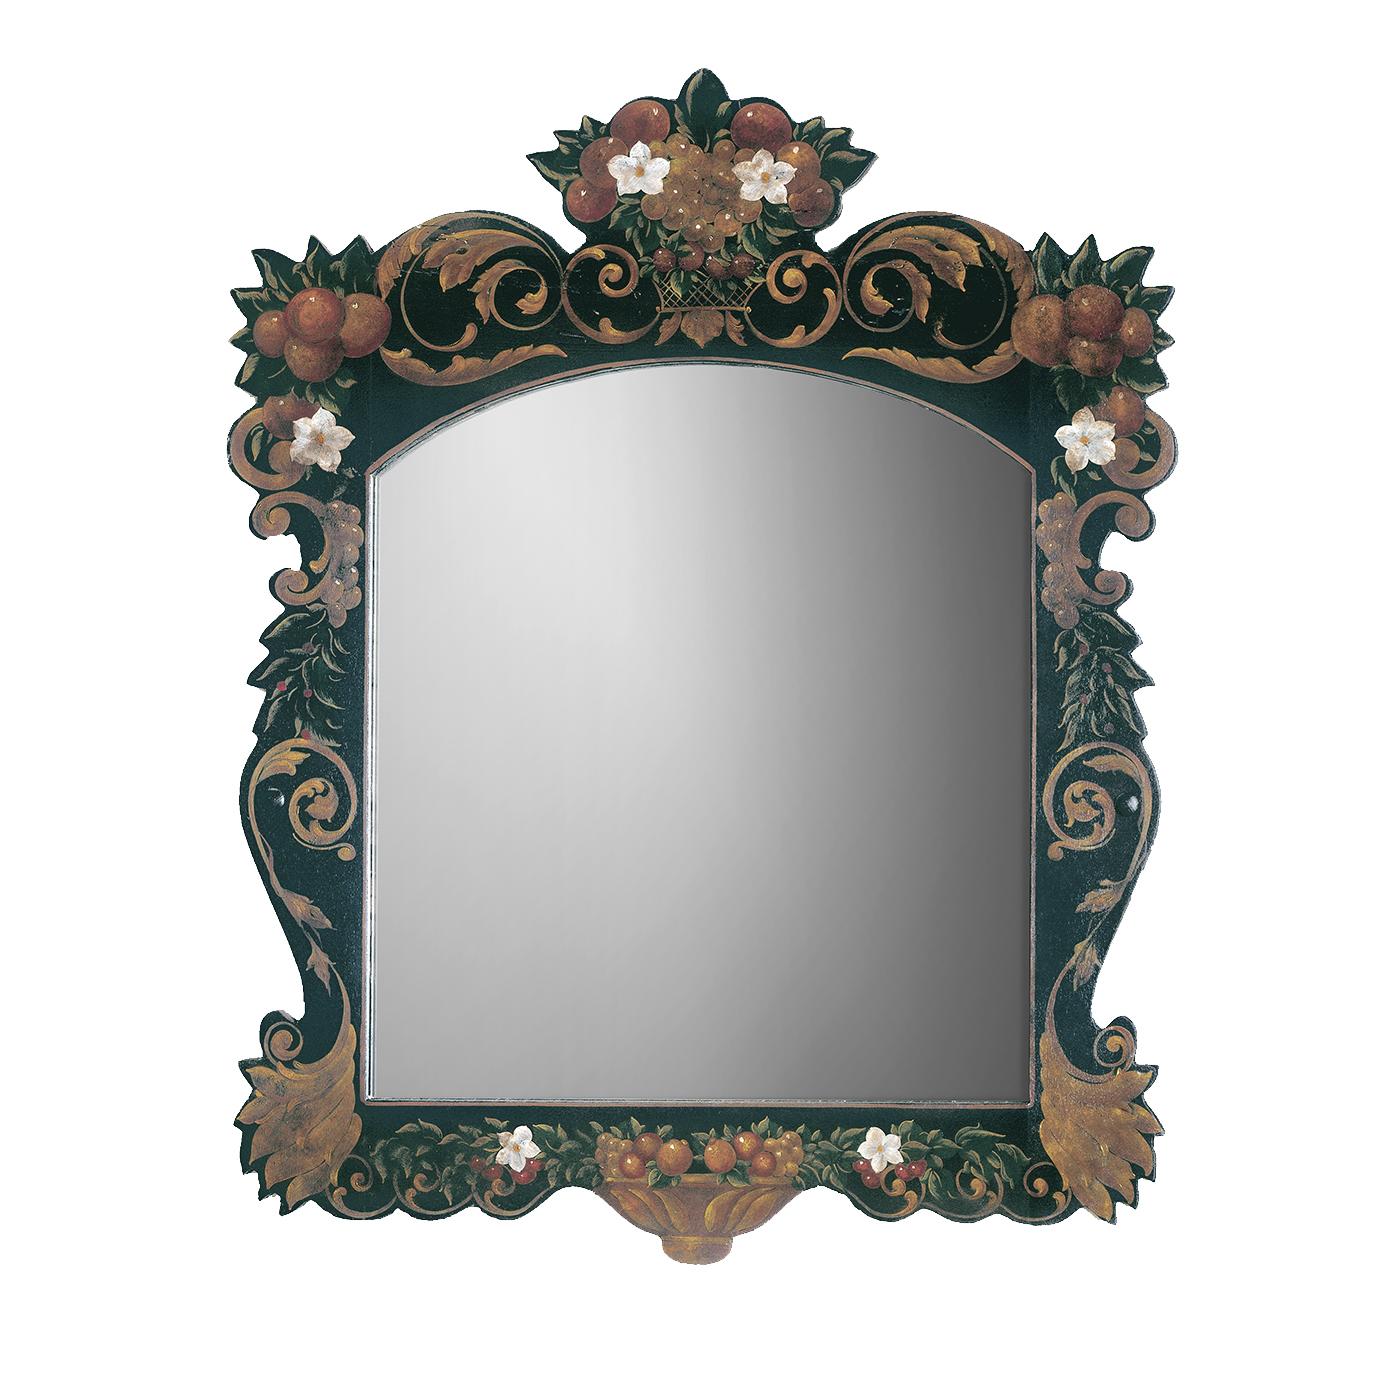 handpainted mirror